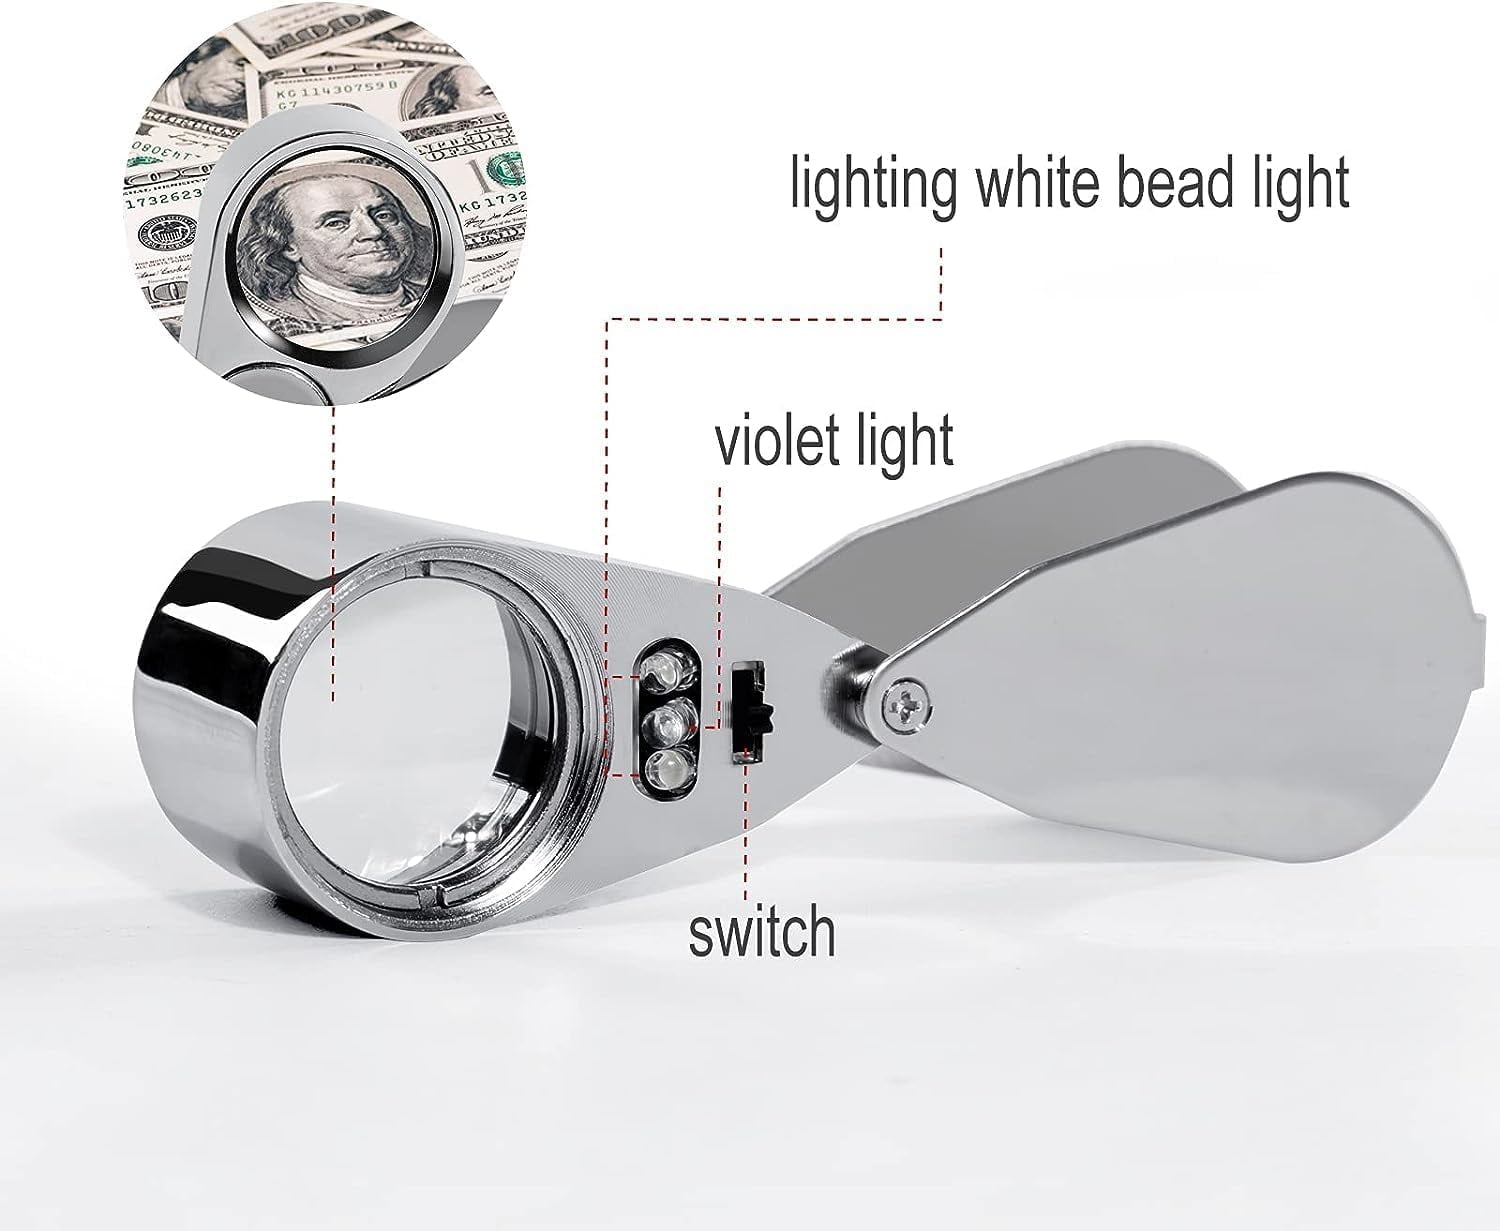 40X LED Illuminated Jeweler Loupe Wide Range Scope Eye Magnifying